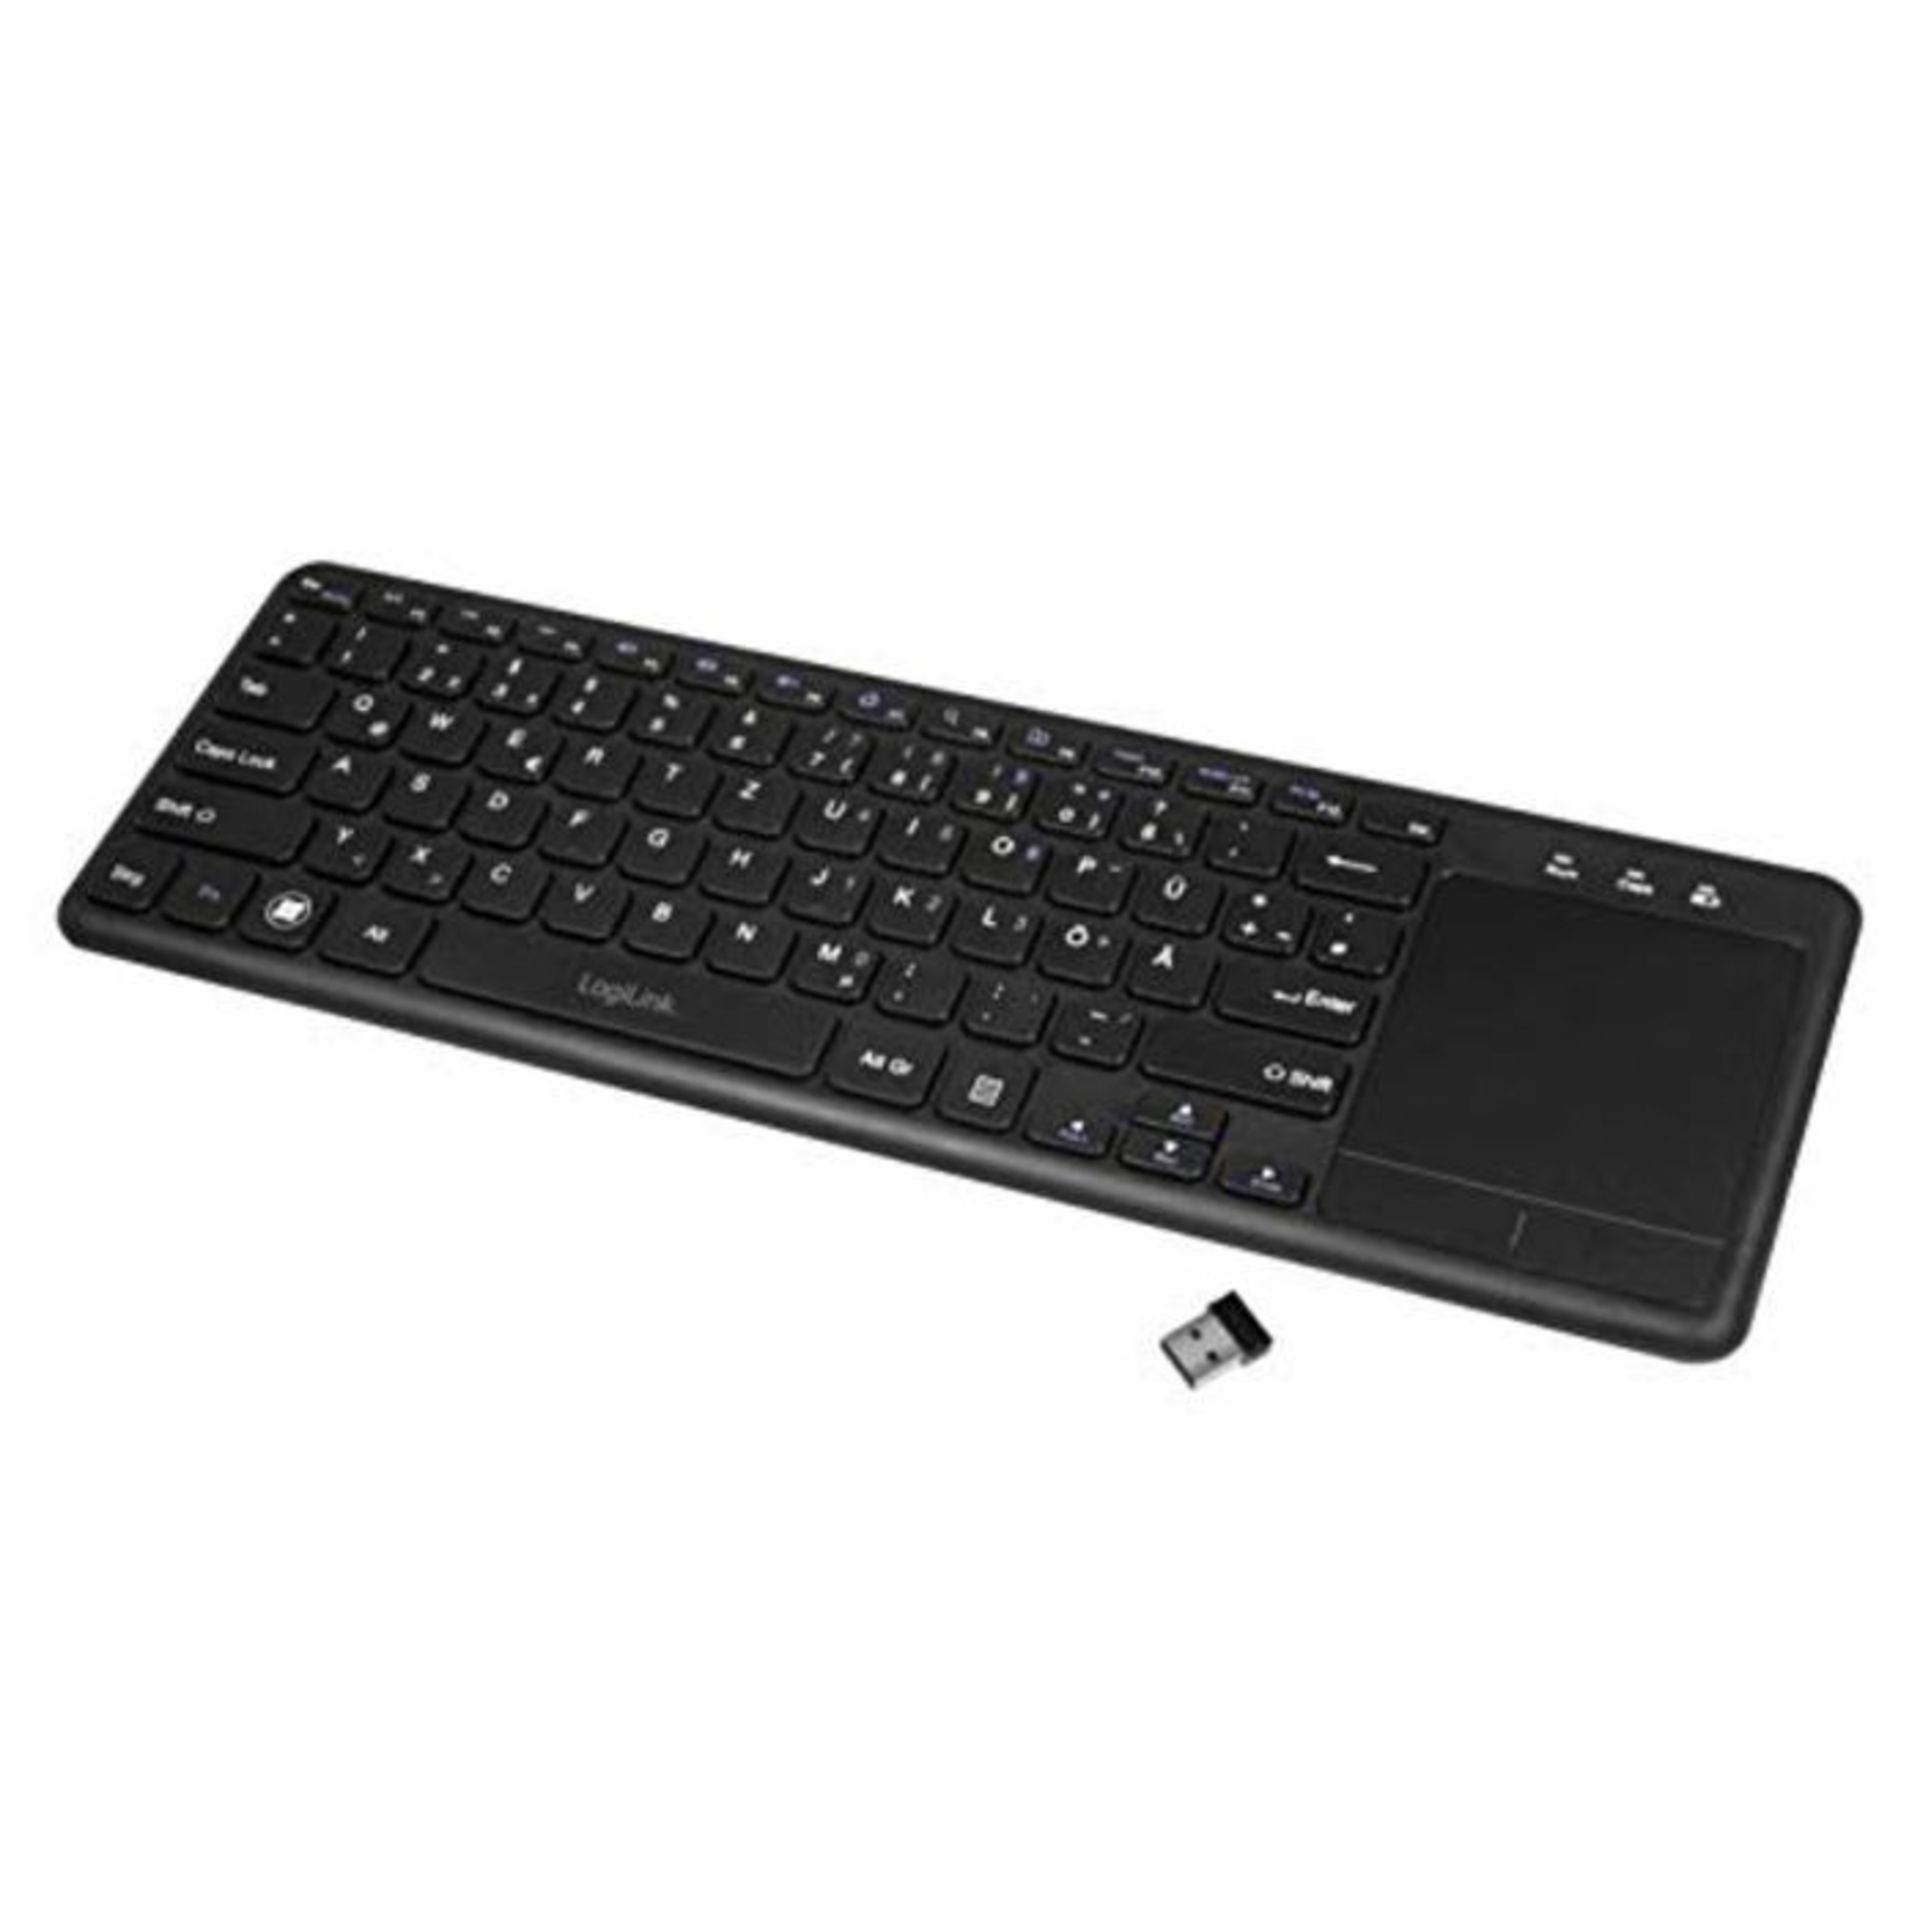 LogiLink ID0188 - Funk Tastatur mit eingebautem Touchpad, 12 praktischen Multimedia Fu